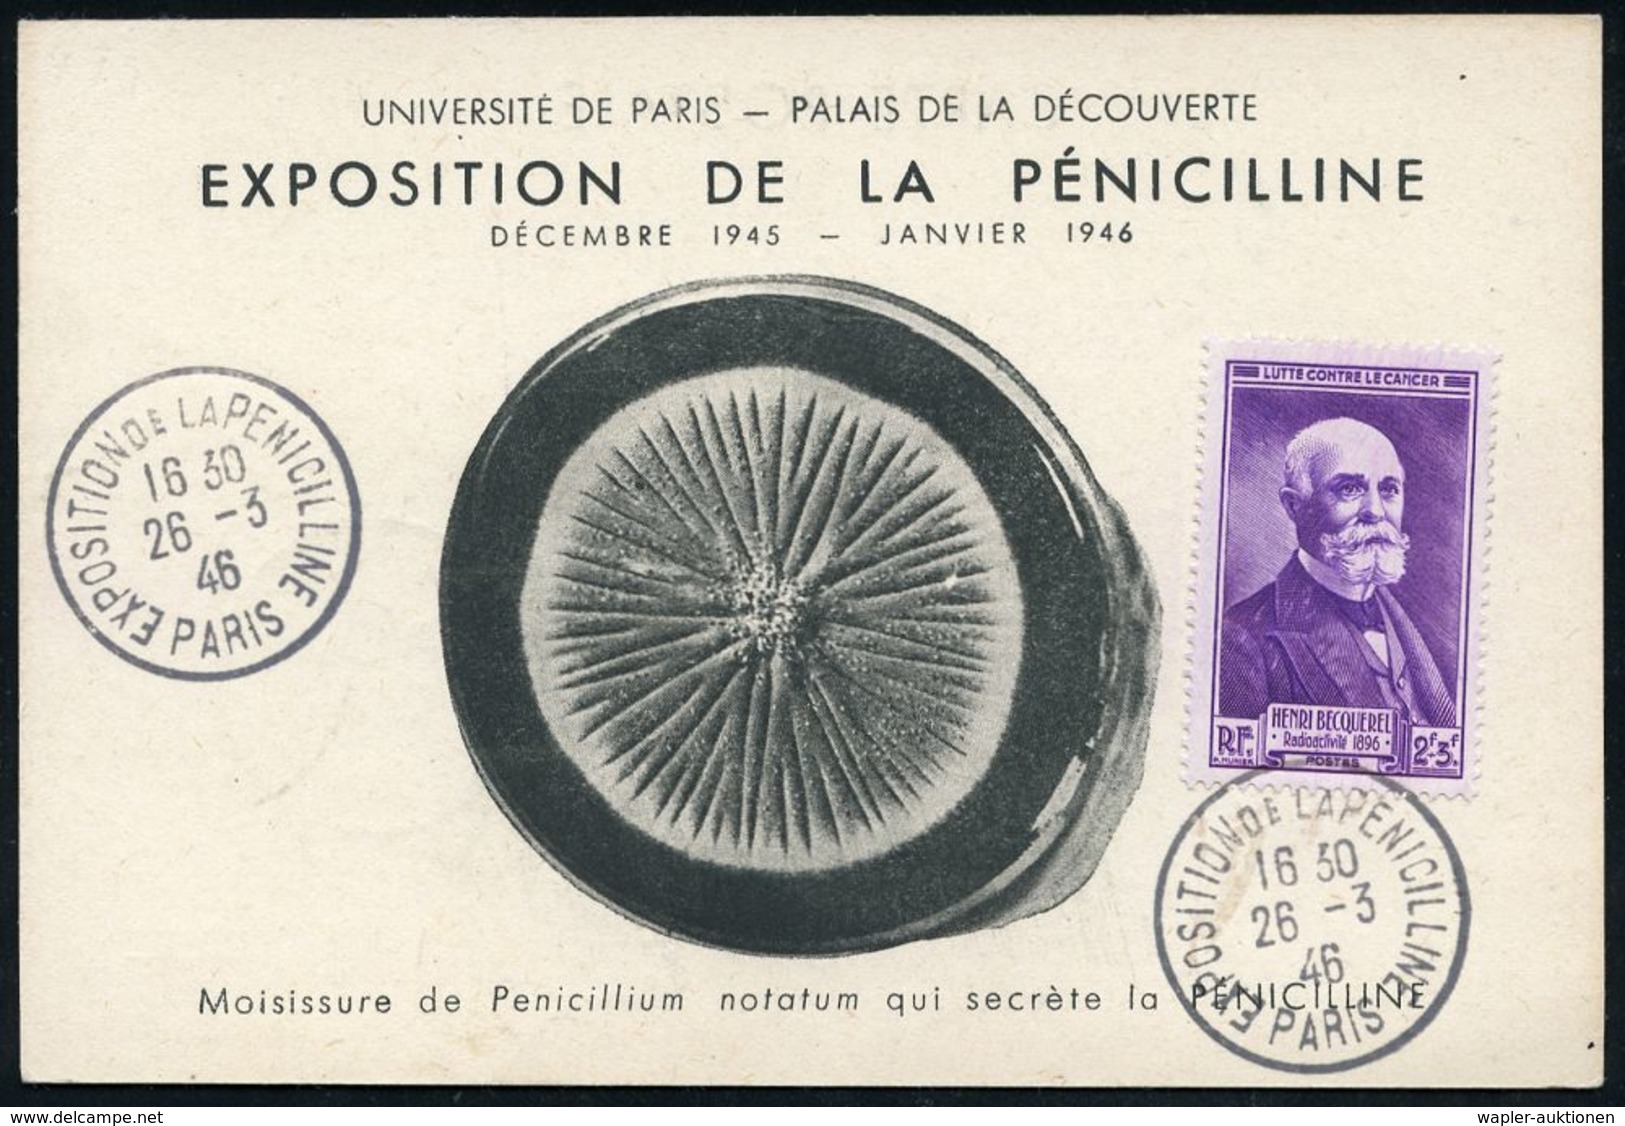 MEDIZINISCHE AUSSTELLUNGEN & KONGRESSE : FRANKREICH 1946 (26.3.) SSt.: PARIS/EXPOSITION DE LA PENICILINE (Penizilin-Auss - Medizin